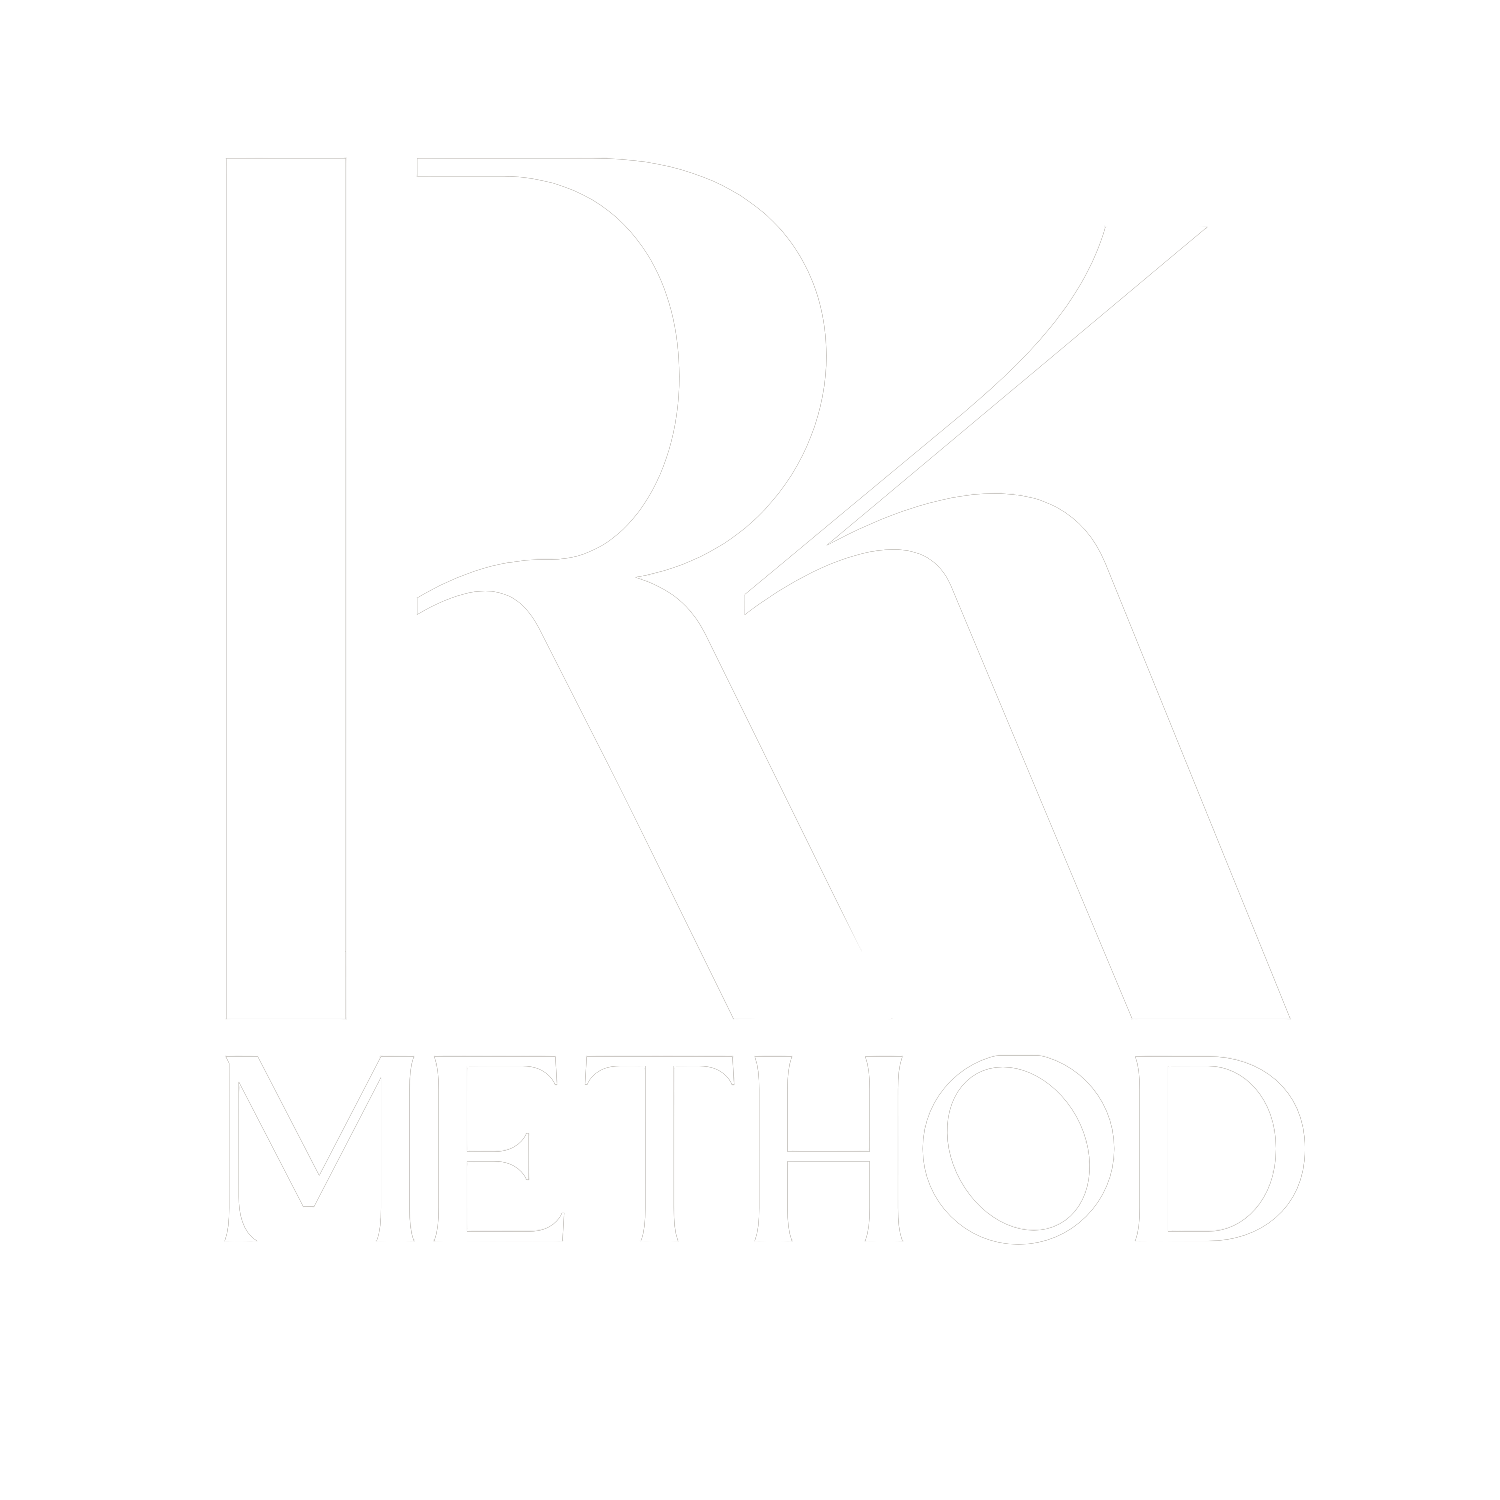 RK Method